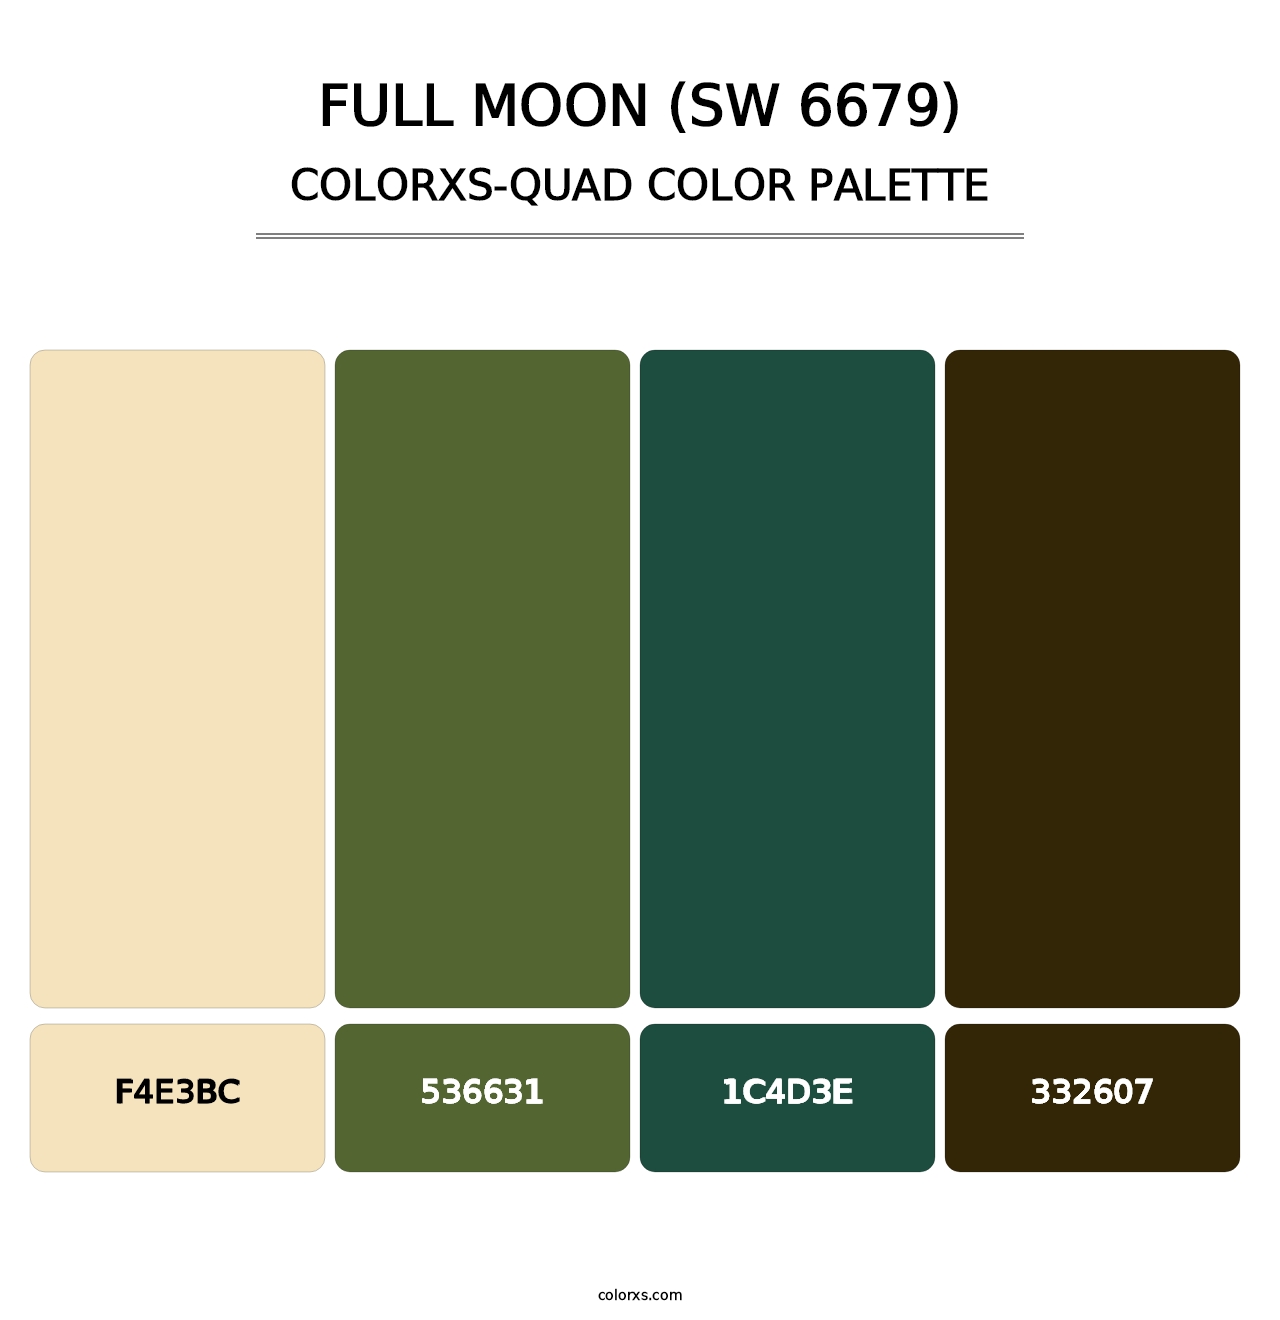 Full Moon (SW 6679) - Colorxs Quad Palette